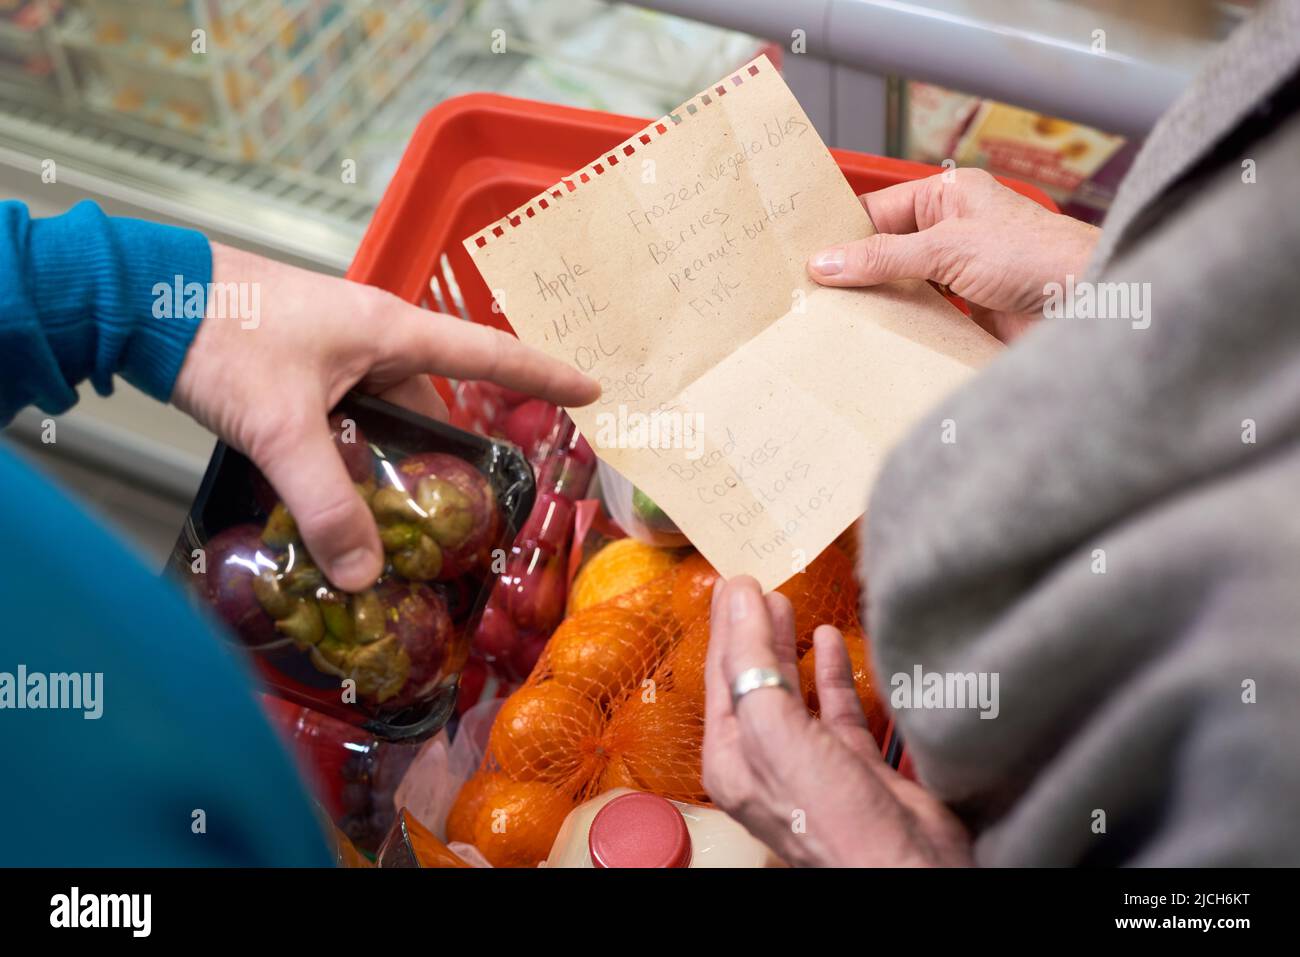 Übersicht über die Hand eines reifen Mannes, der auf die Einkaufsliste seiner Frau über den Wagen mit frisch verpackten Früchten und anderen Lebensmitteln zeigt Stockfoto